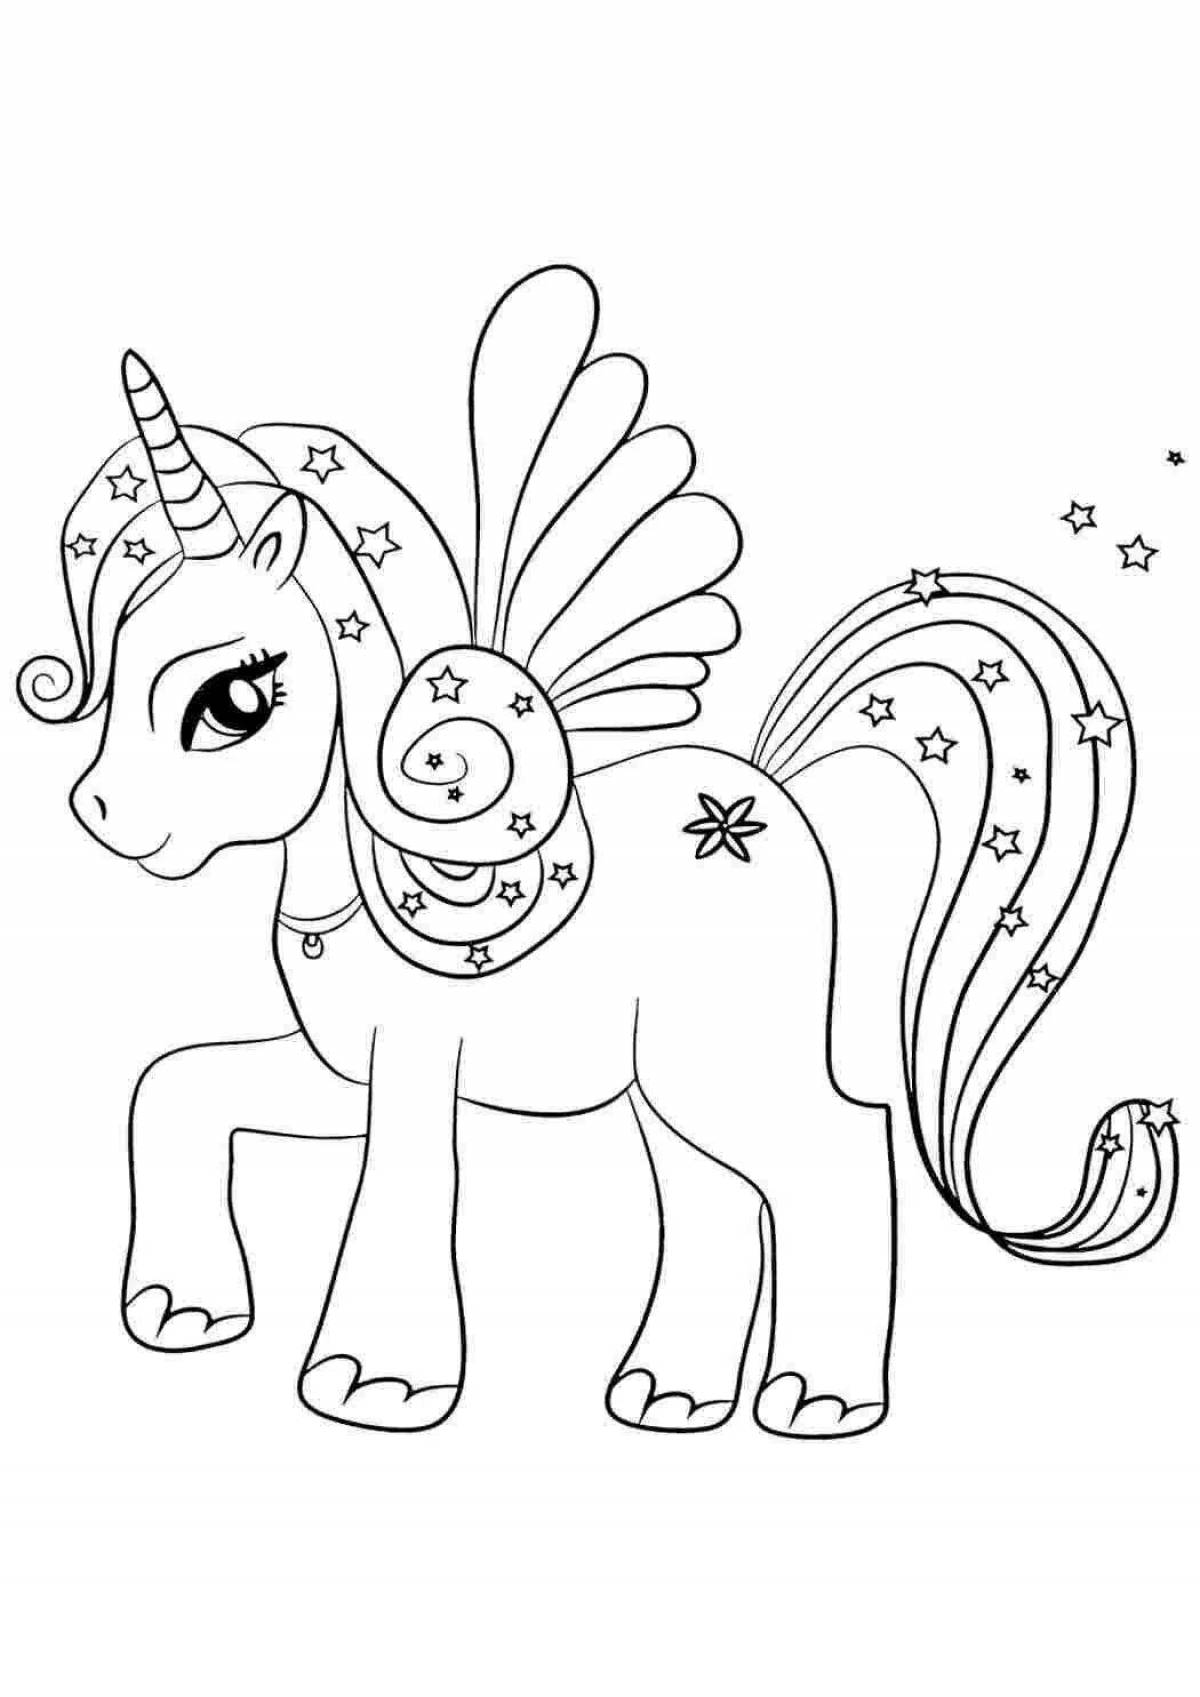 Glitzy coloring page unicorn cartoon